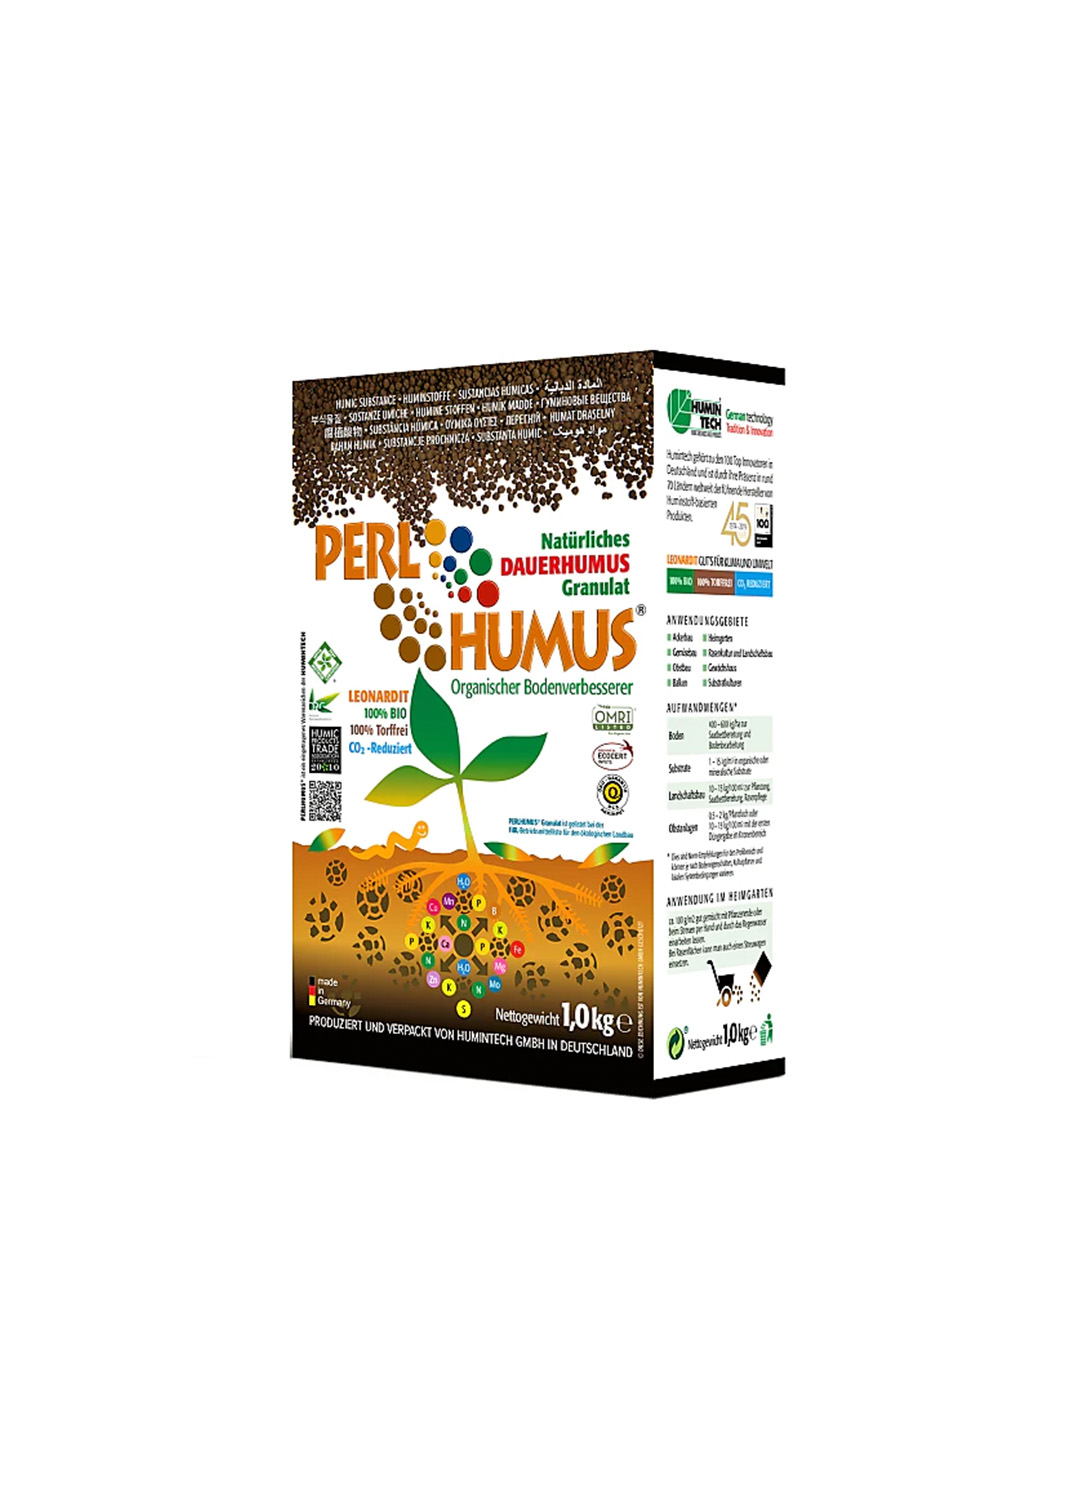 Perl Humus Organic Soil Conditioner